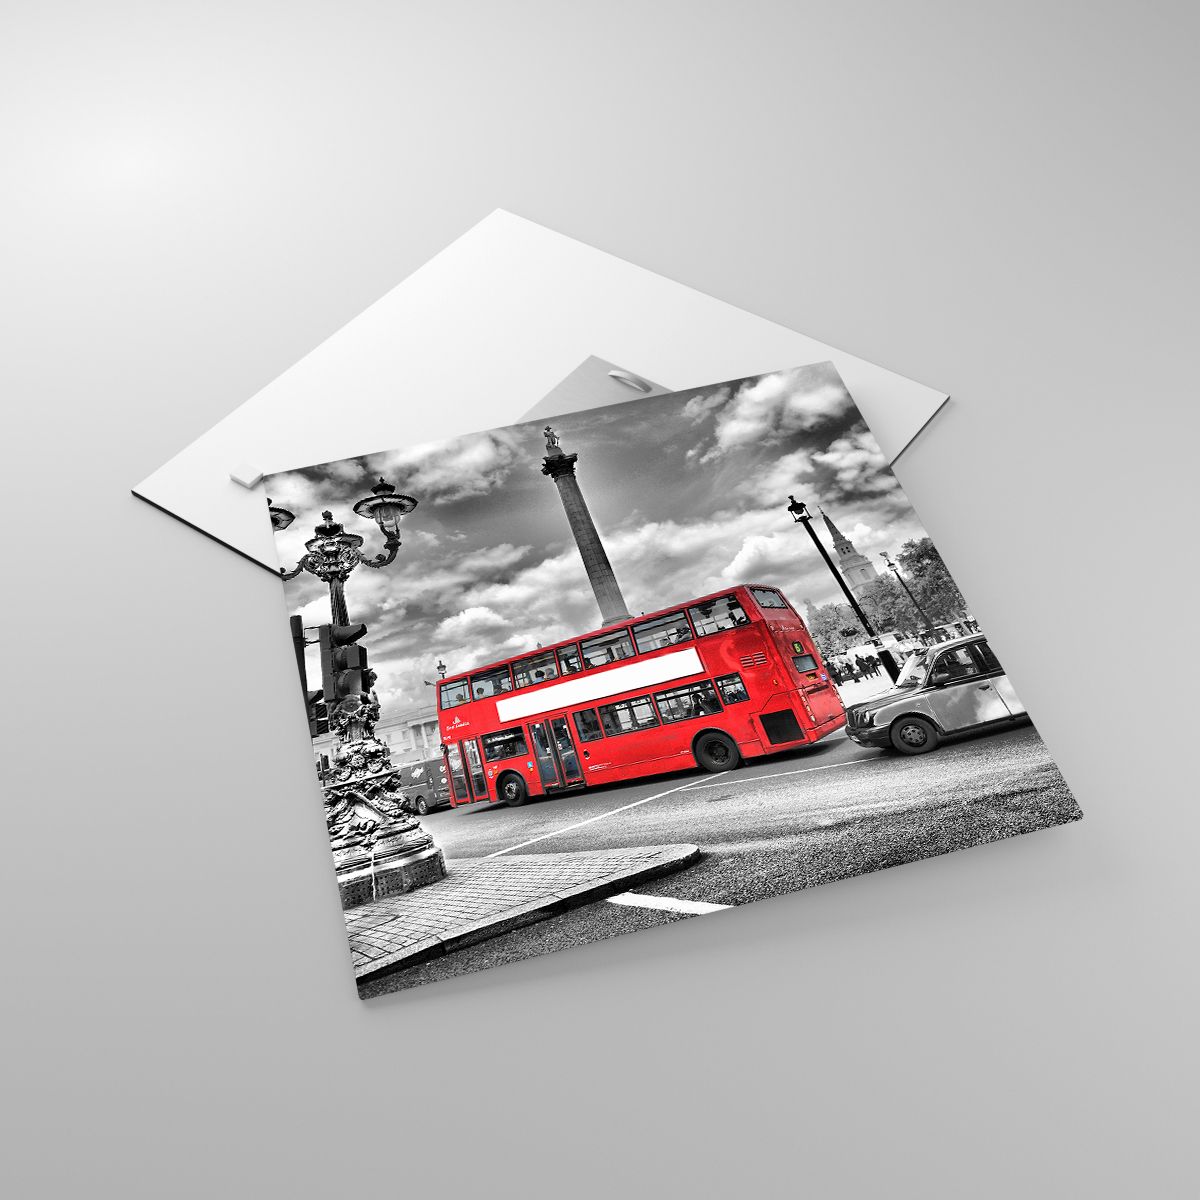 Glasbild Städte, Glasbild London, Glasbild Die Architektur, Glasbild Roter Bus, Glasbild Reisen